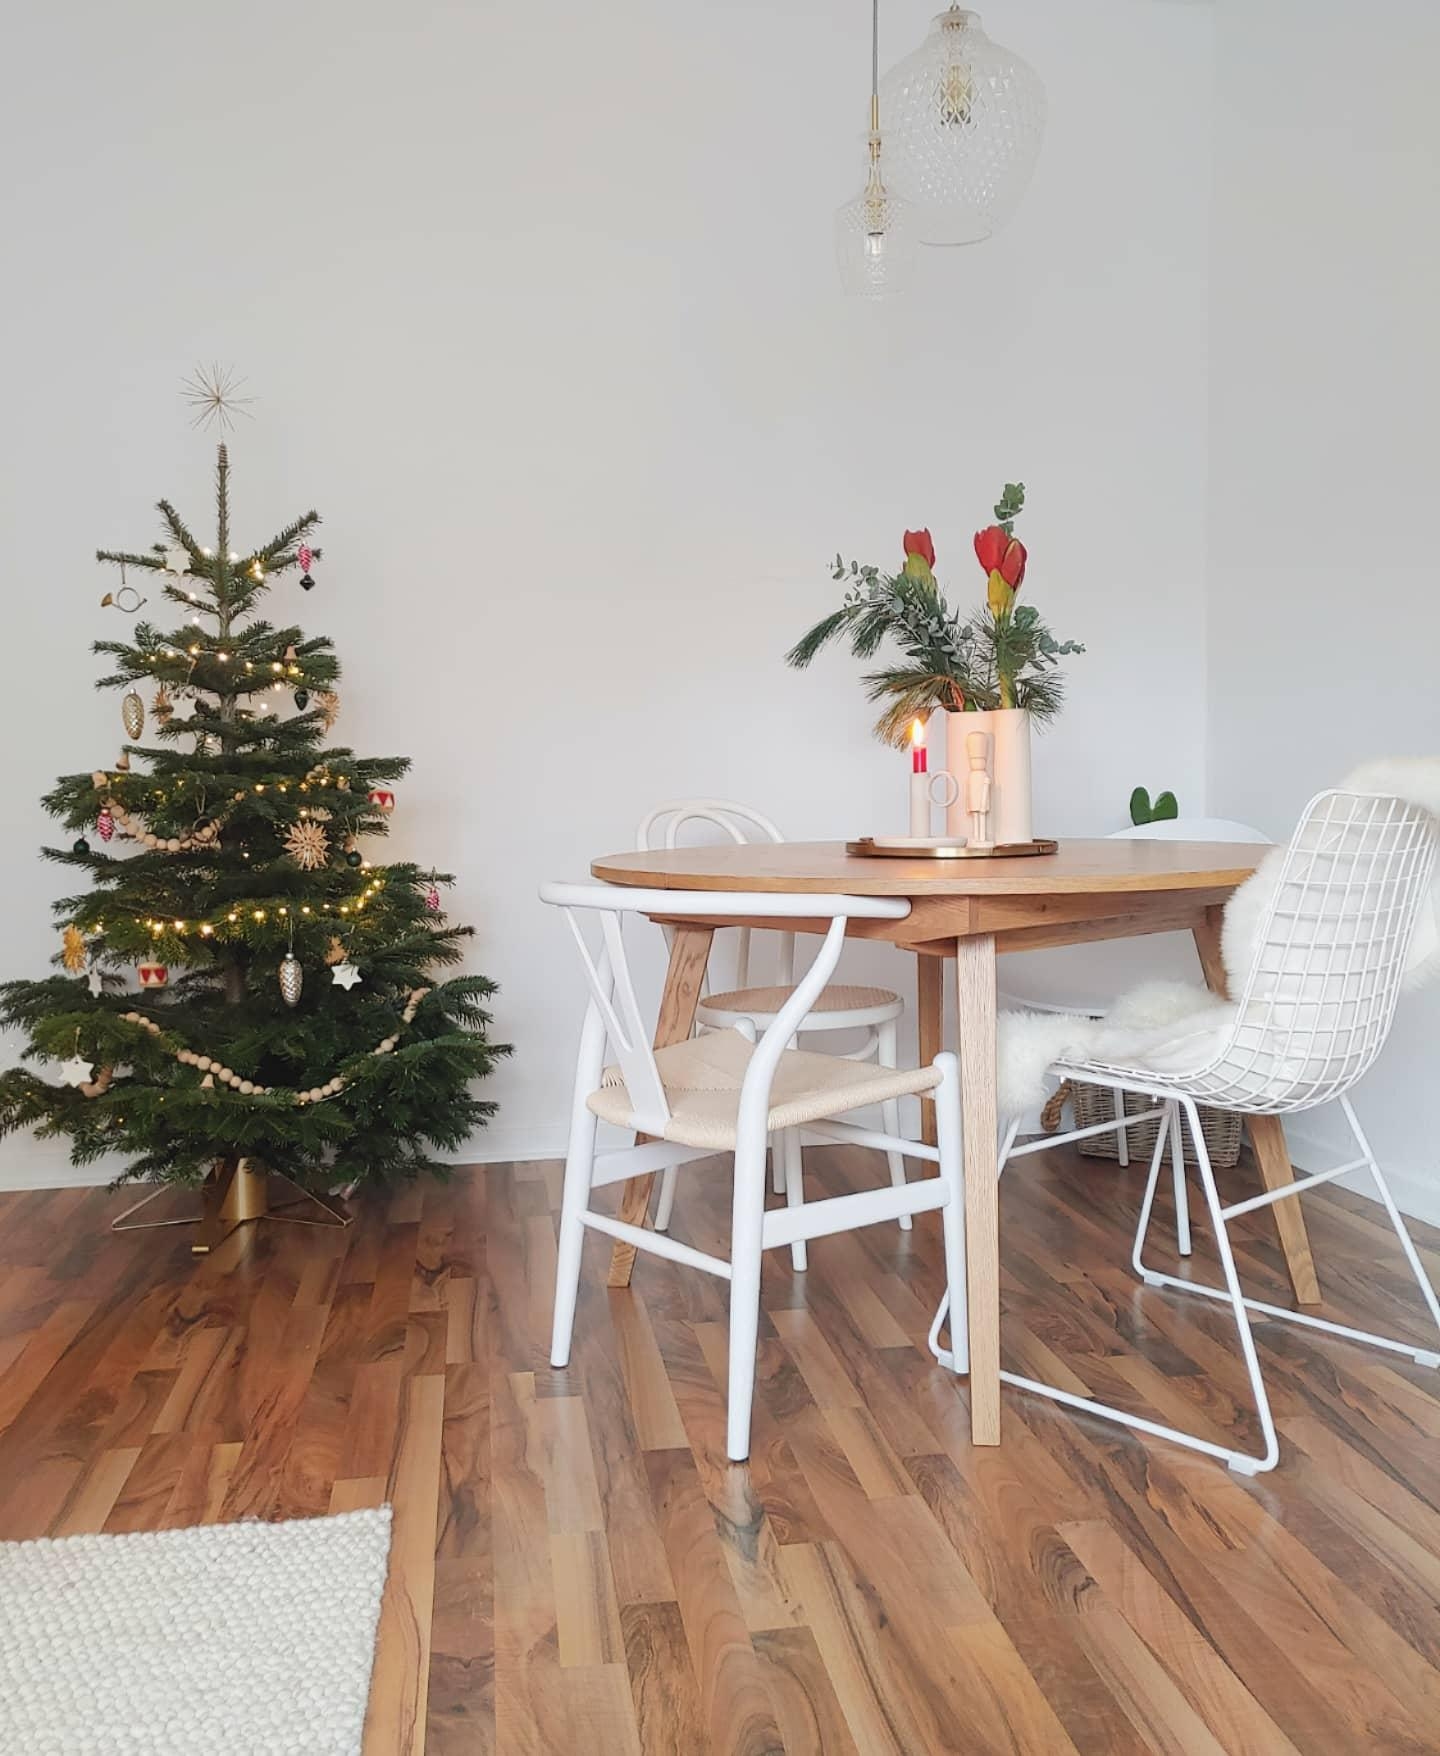 Heute mal ein ganzer Weihnachtsspam...

#Weihnachtsbaum #Advent #Weihnachtsdeko #Skandi #Hygge #Wohnzimmer #couchliebt 
